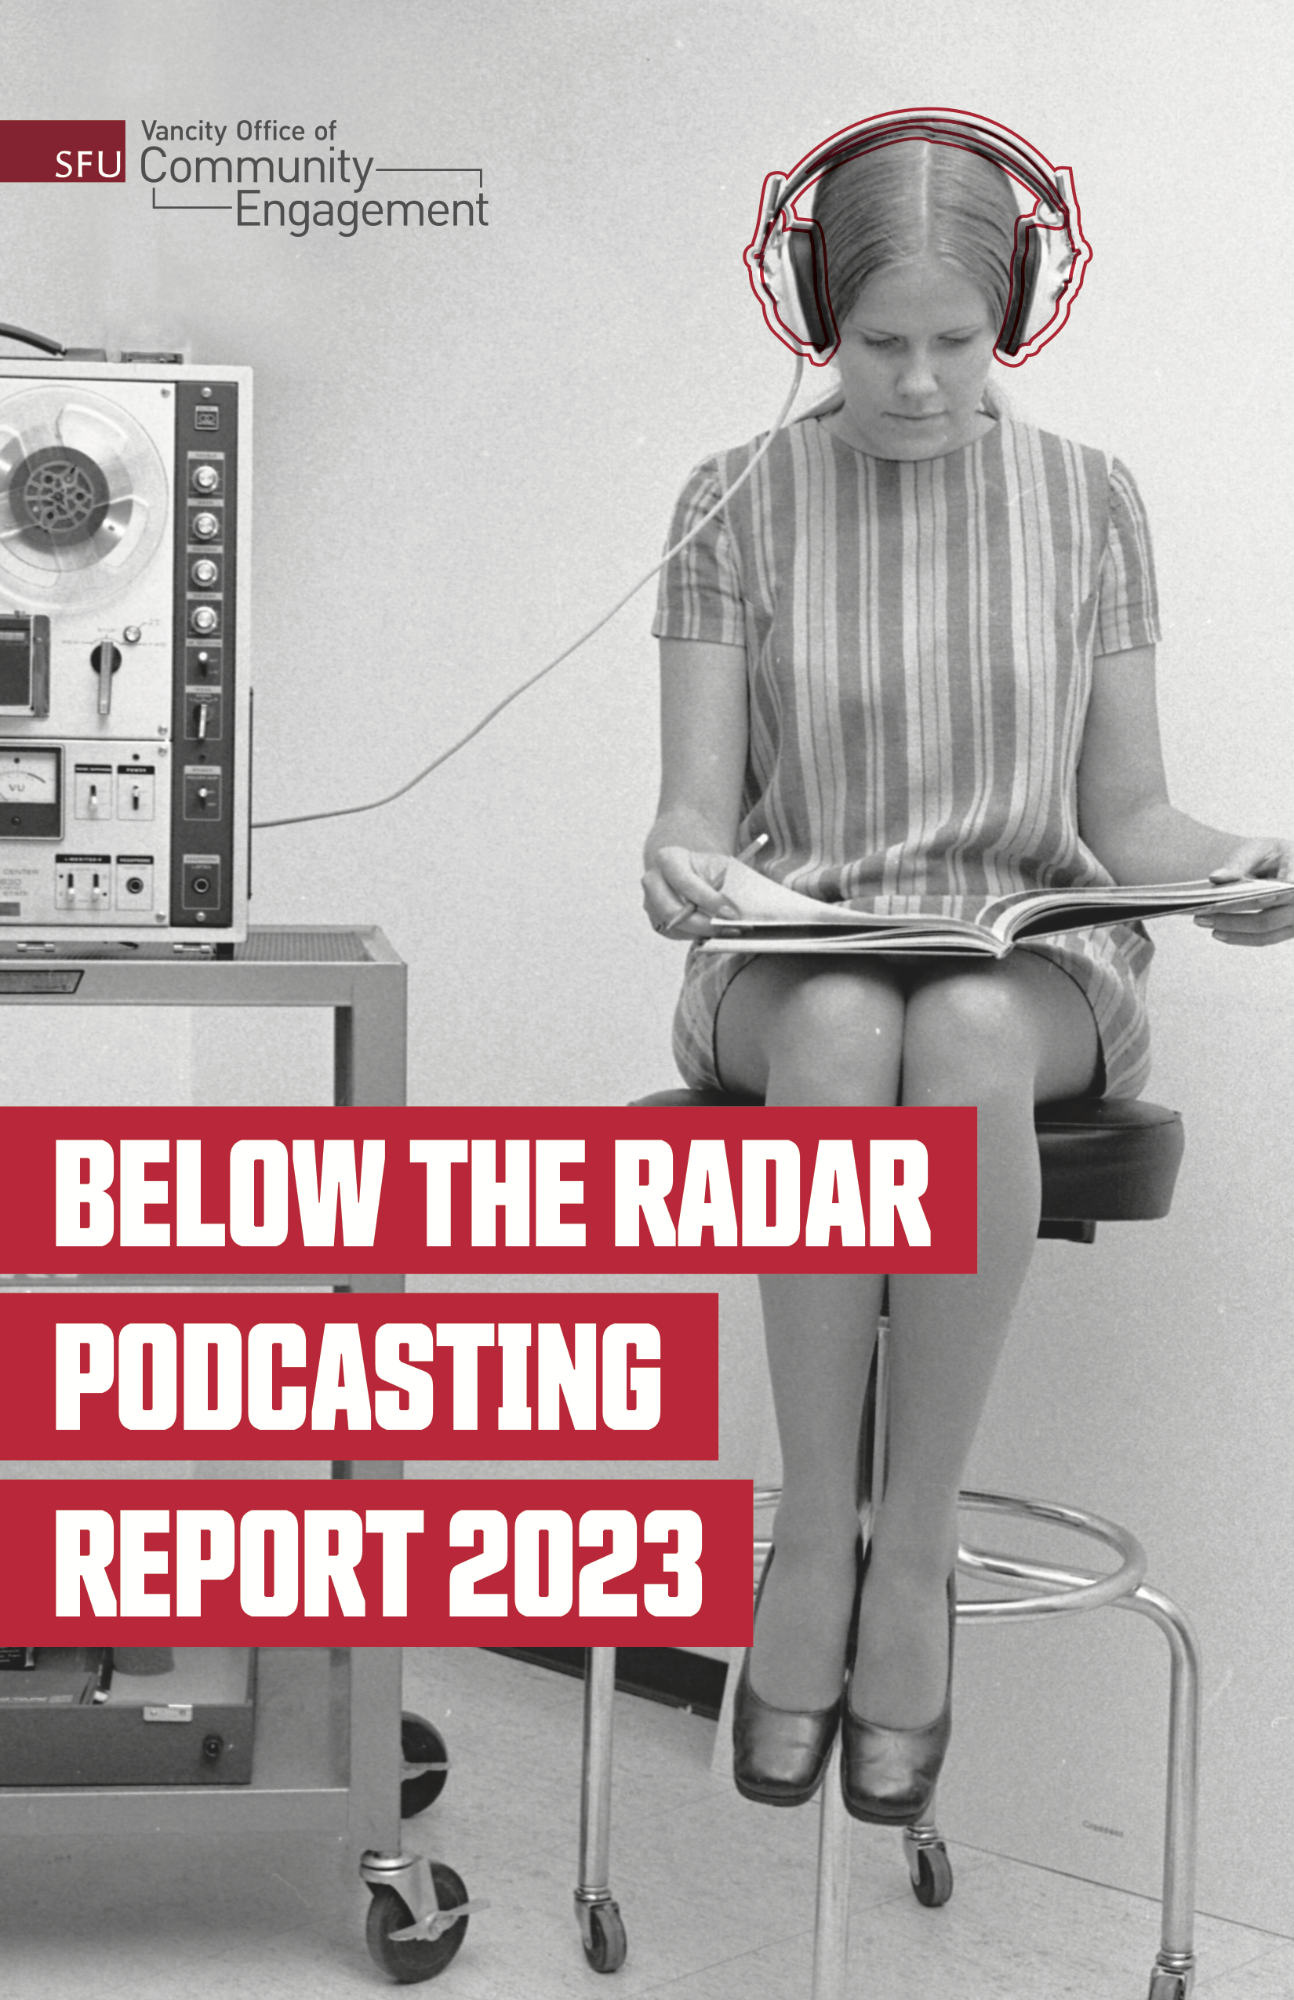 SFU VOCE 2023 Podcasting Report